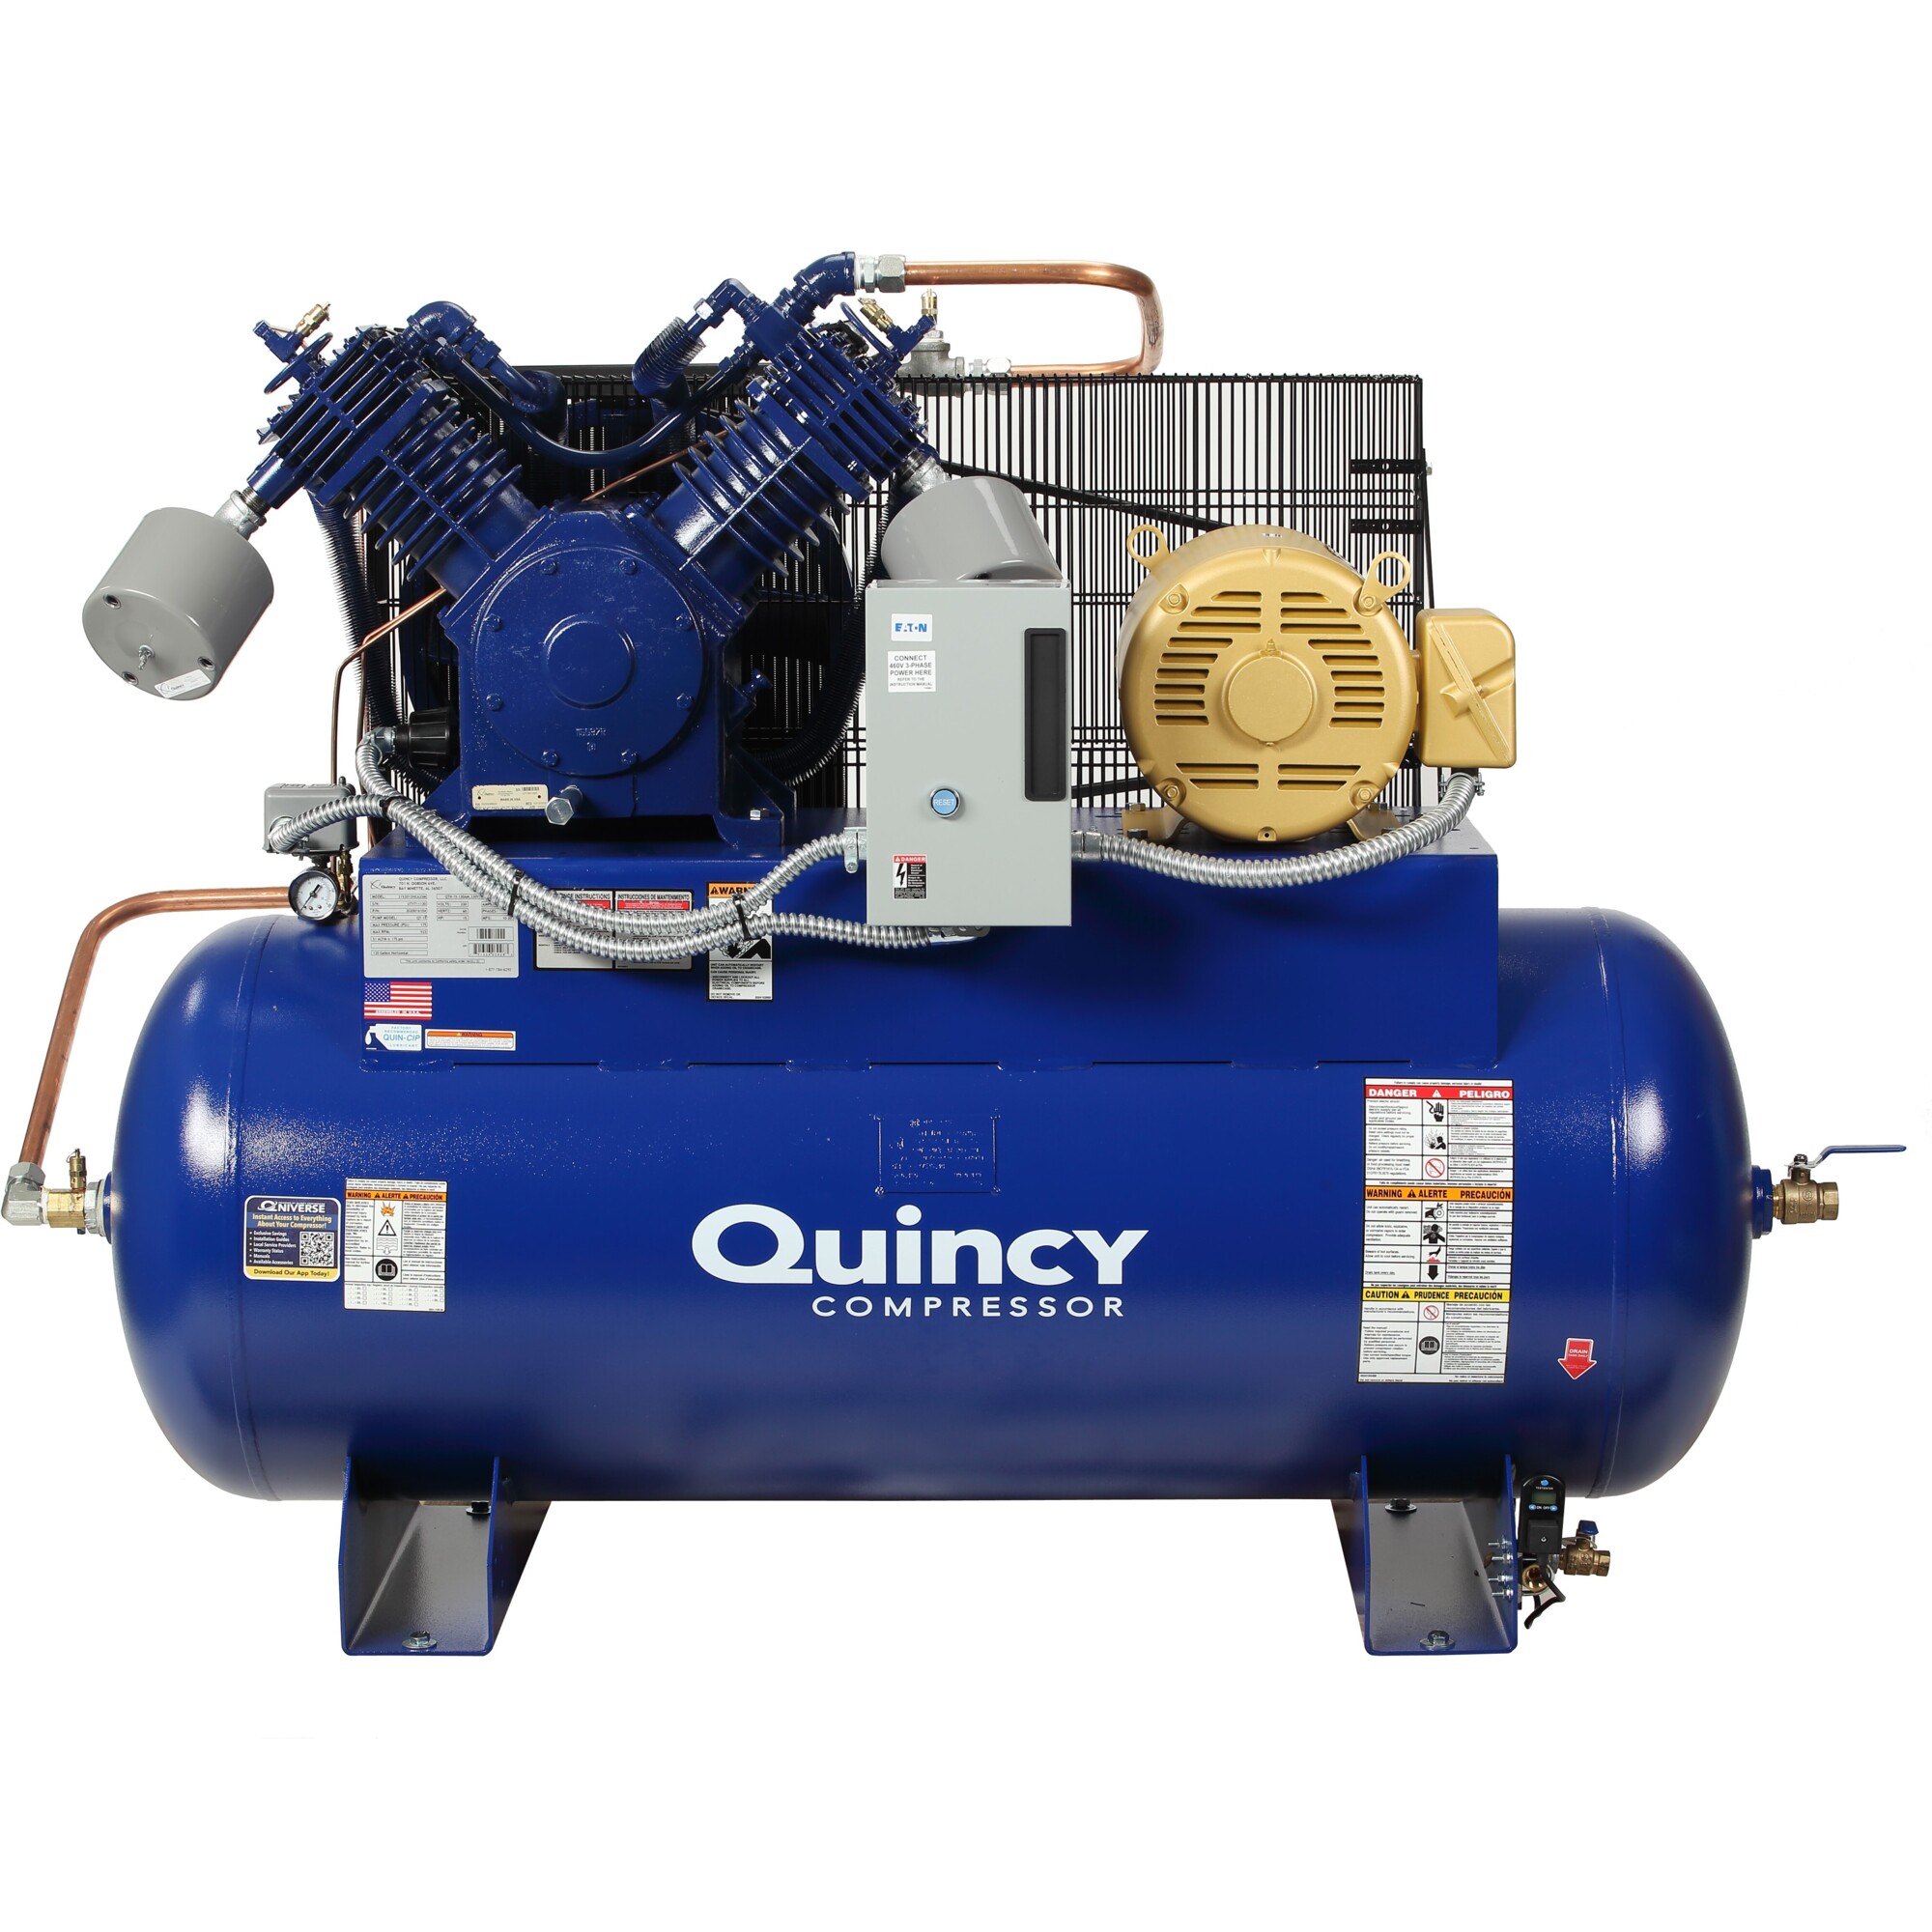 Quincy Compressor 2020040896